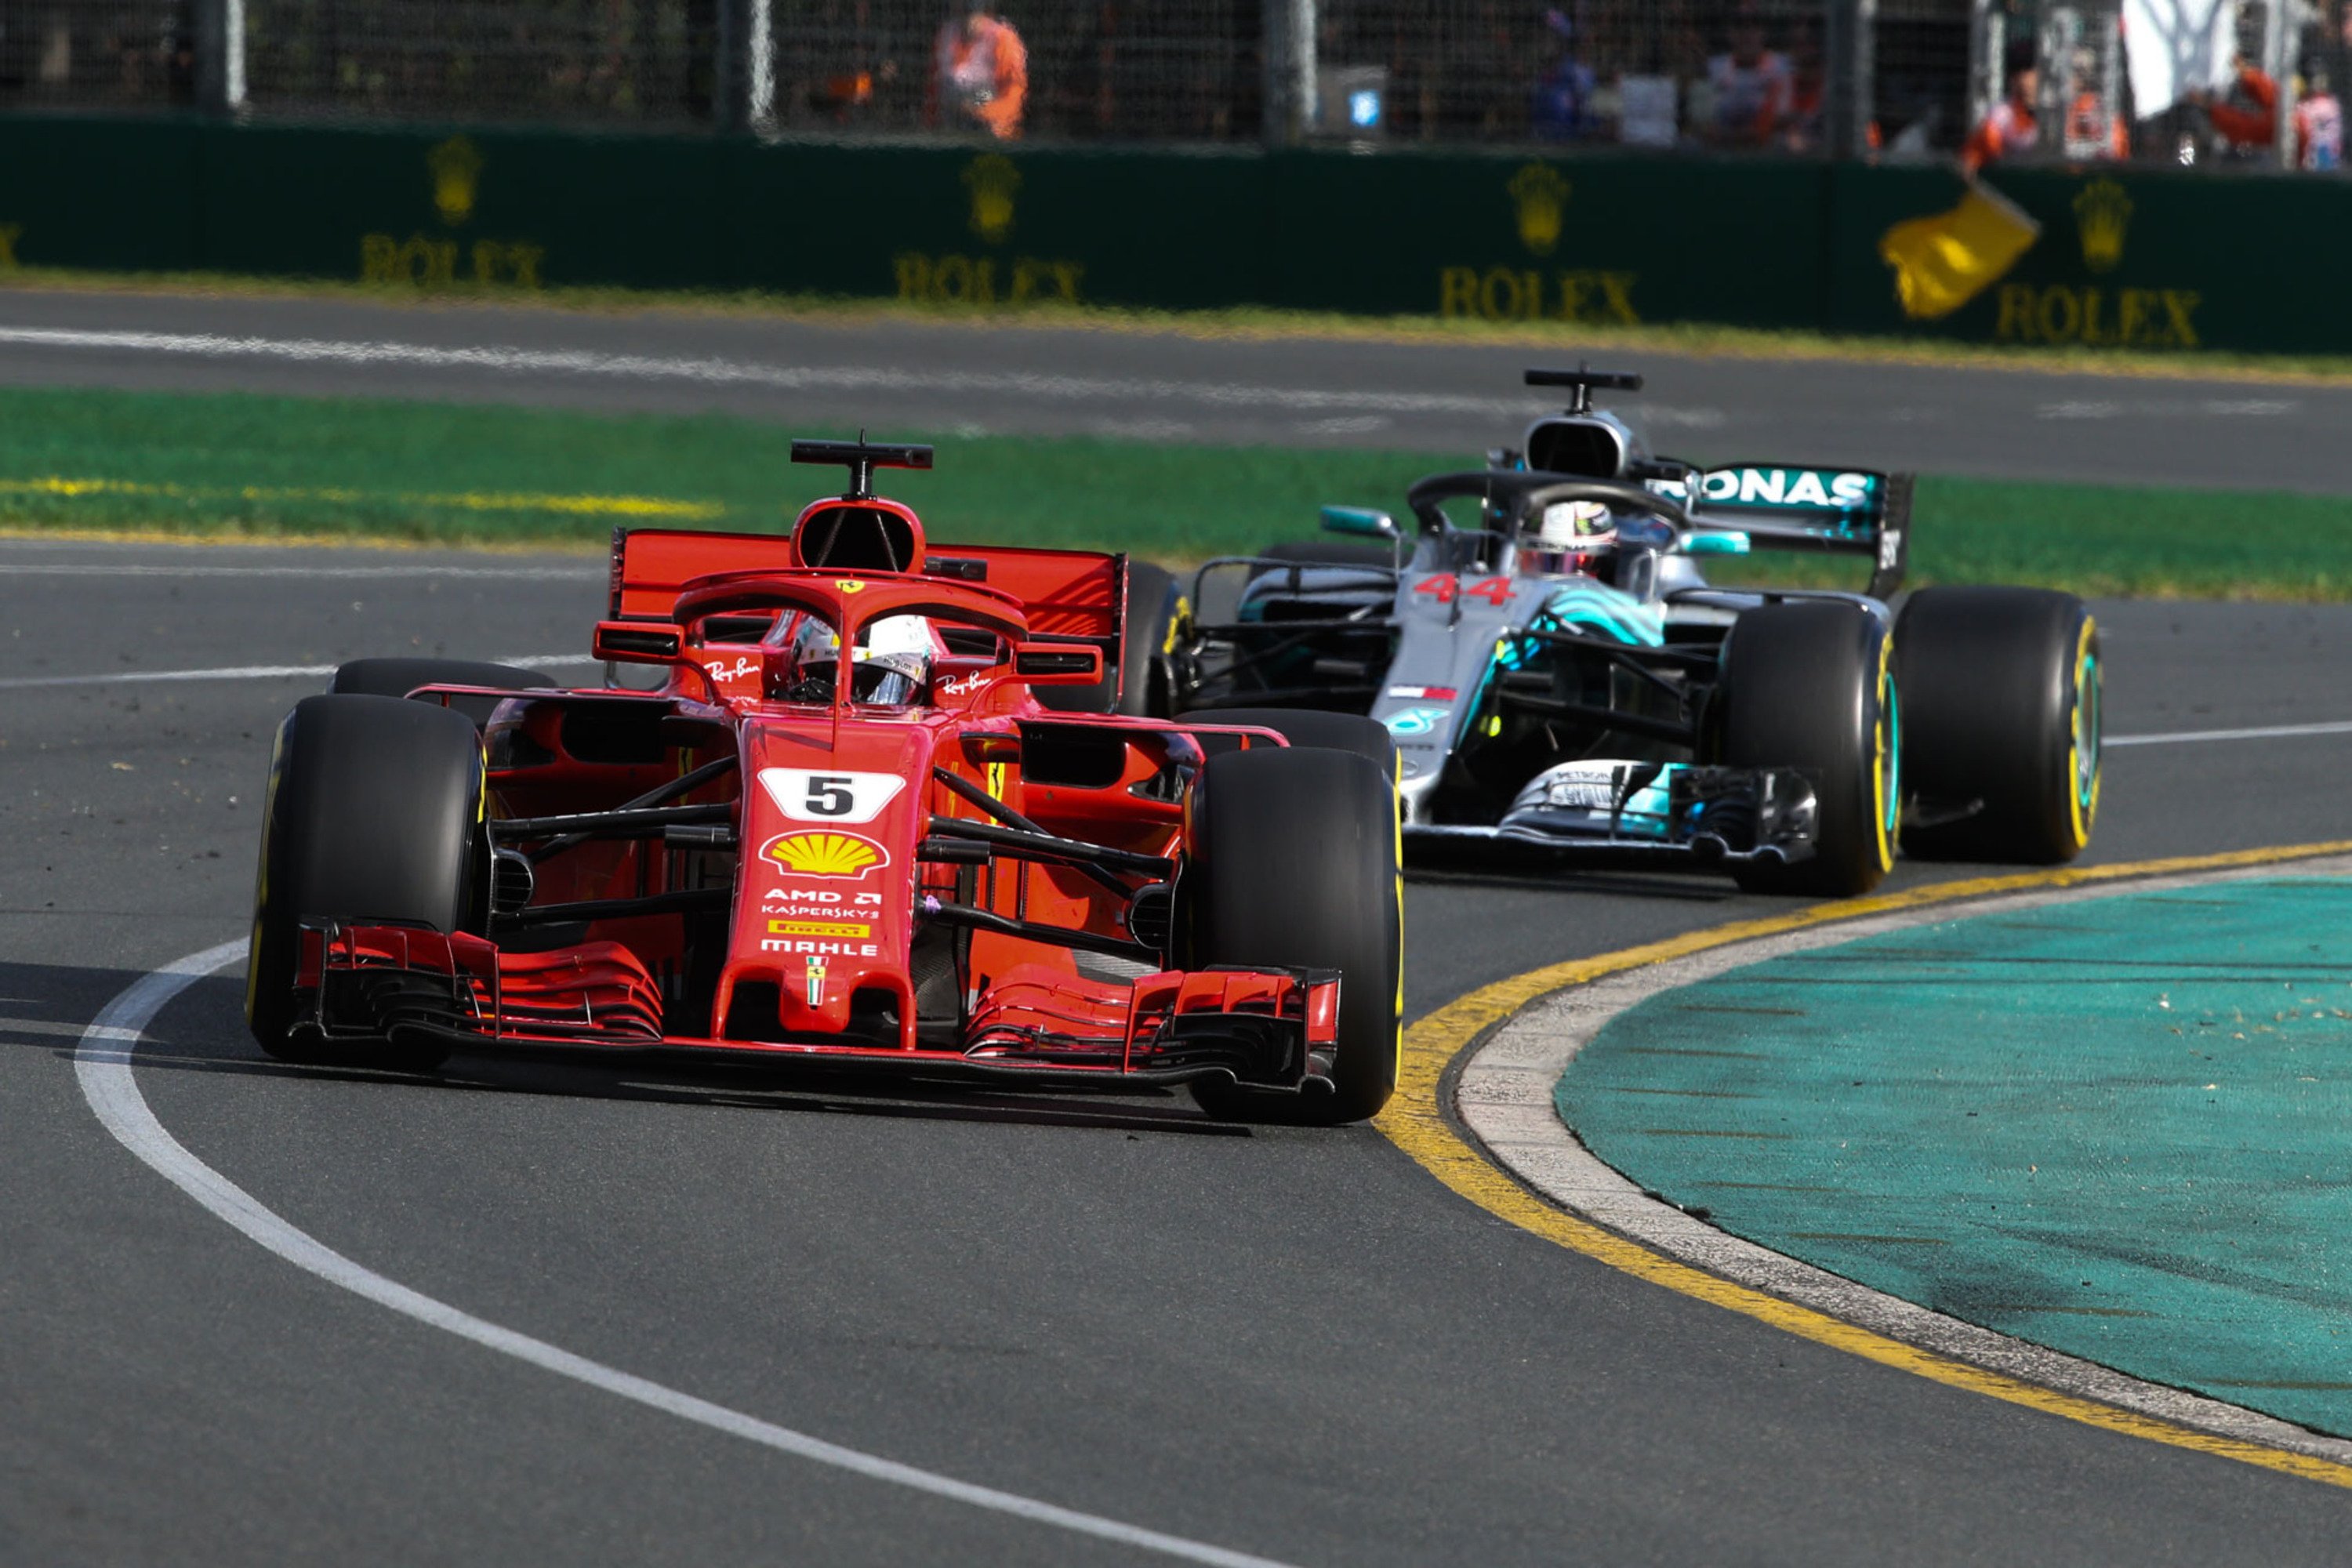 F1, GP Australia 2018: vince Vettel. Terzo Raikkonen